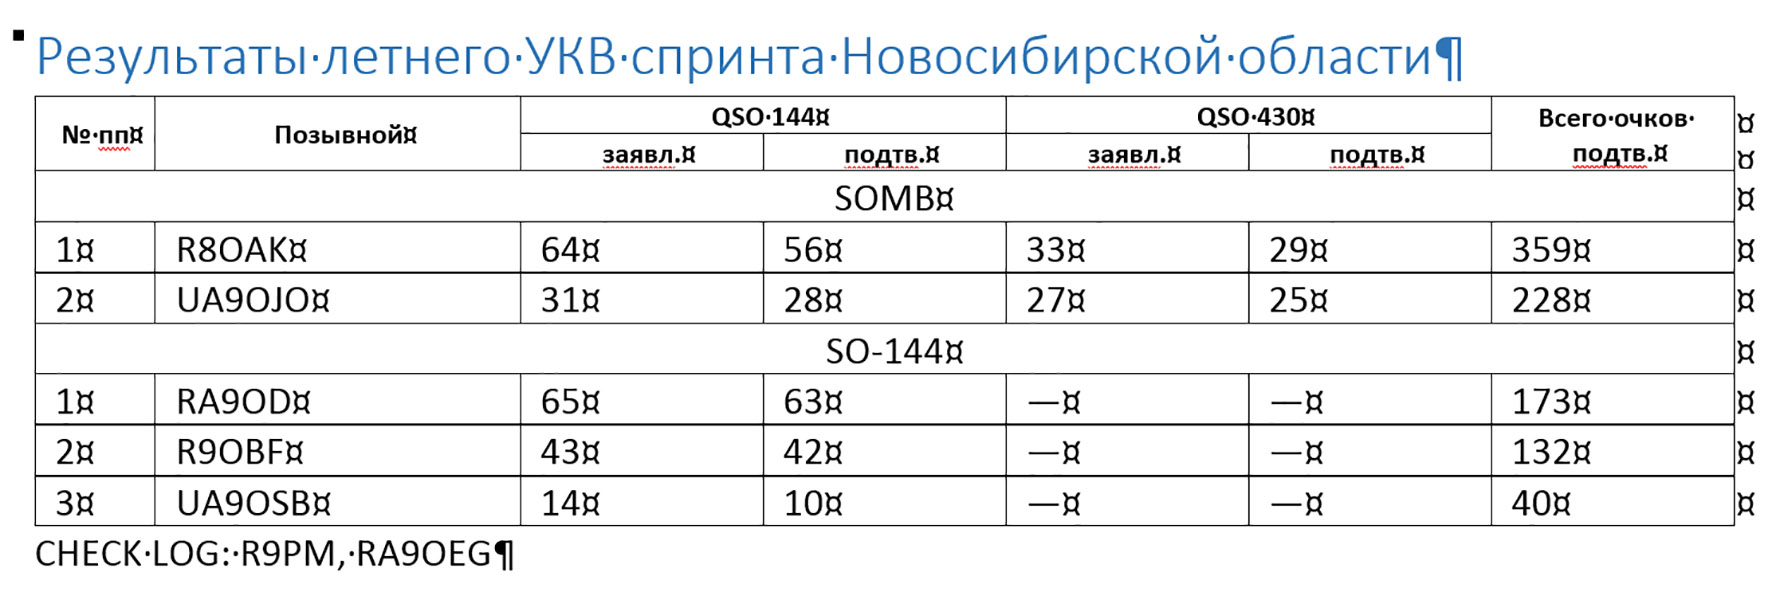 Результаты летнего УКВ спринта Новосибирской области.jpg